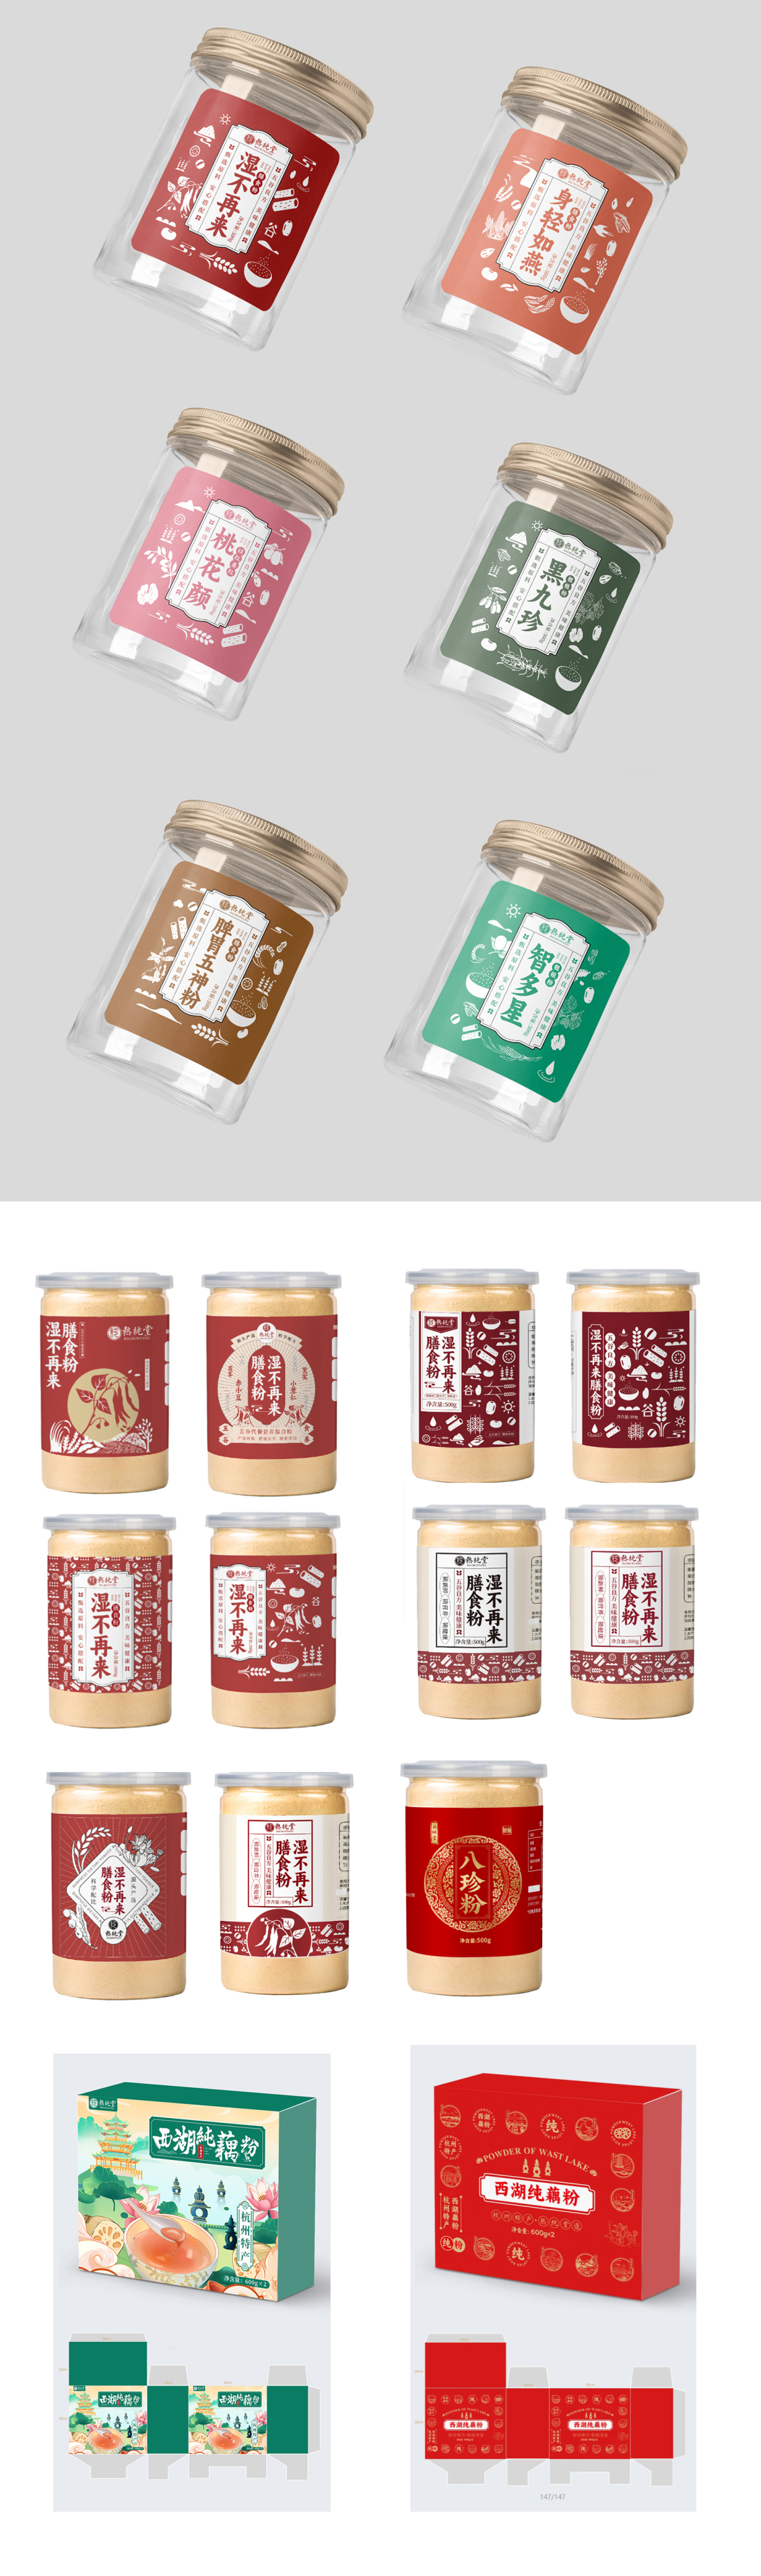 淘宝美工y252372粉类冲调罐装标签 包装制作作品